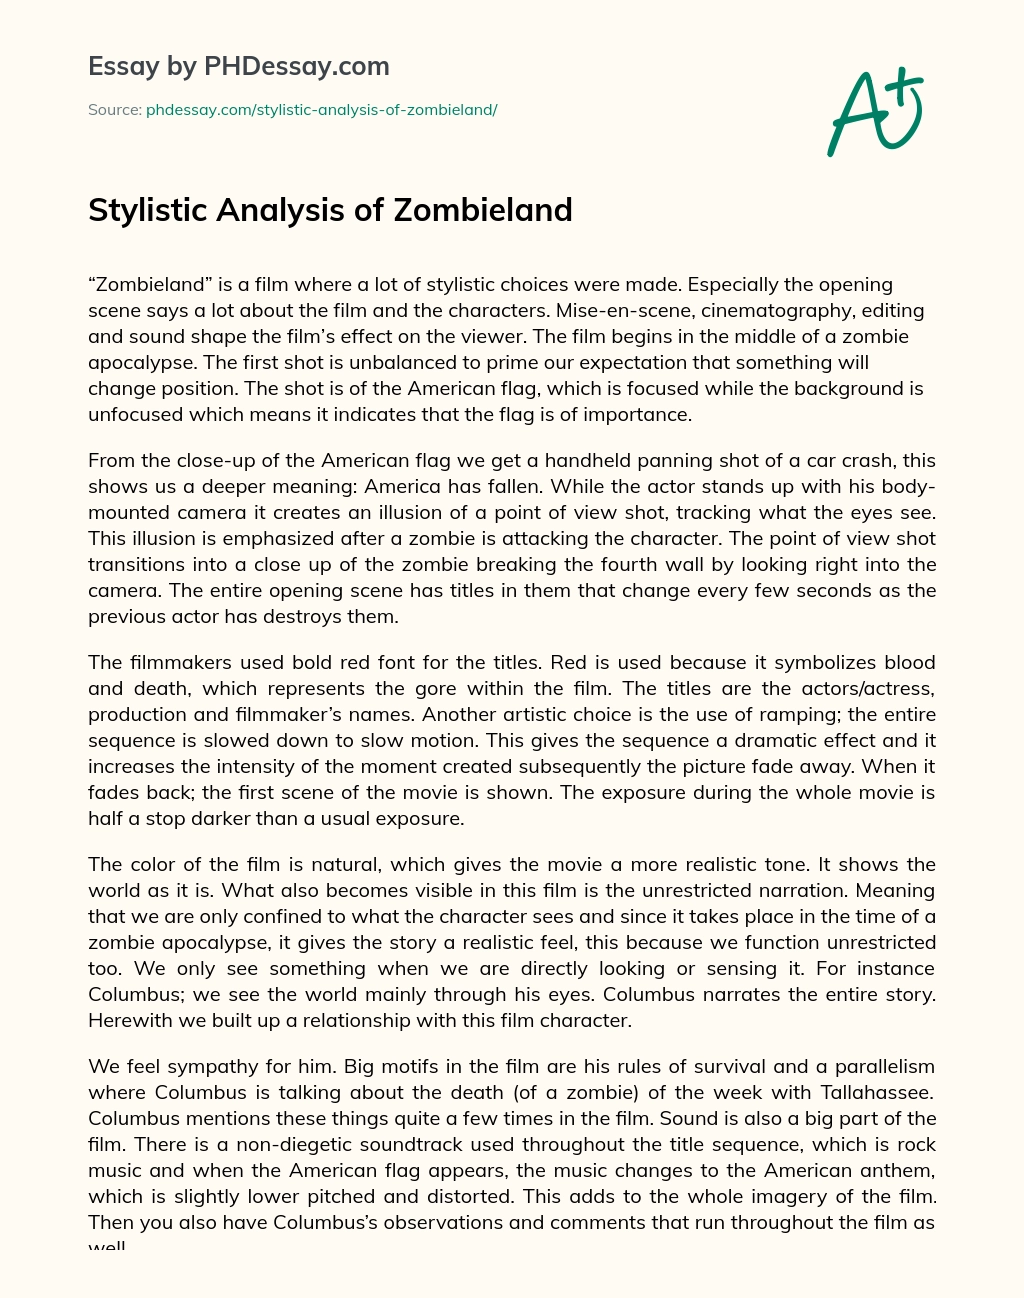 Stylistic Analysis of Zombieland essay